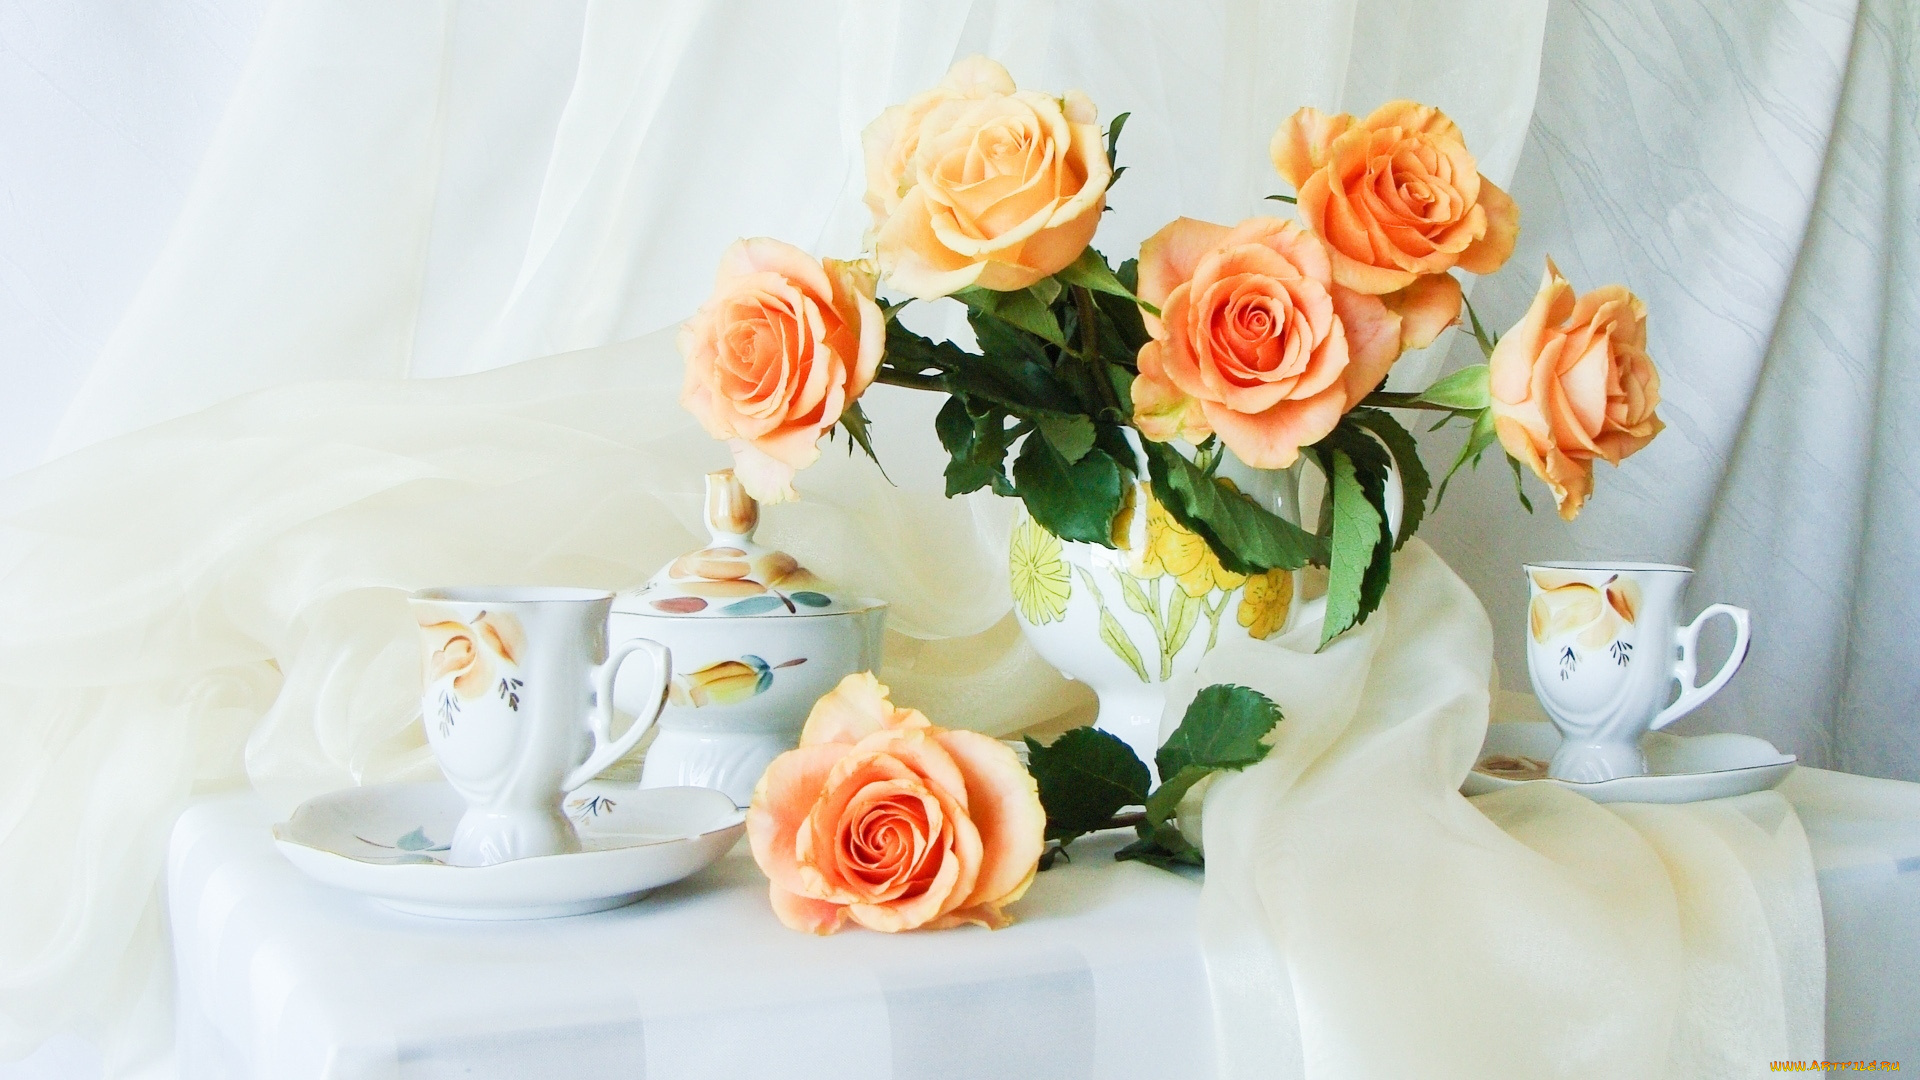 Хорошего нежного дня настроения. Утренние цветы. Красивые букеты цветов в вазах. Утренний букет. Нежные розы в вазе.